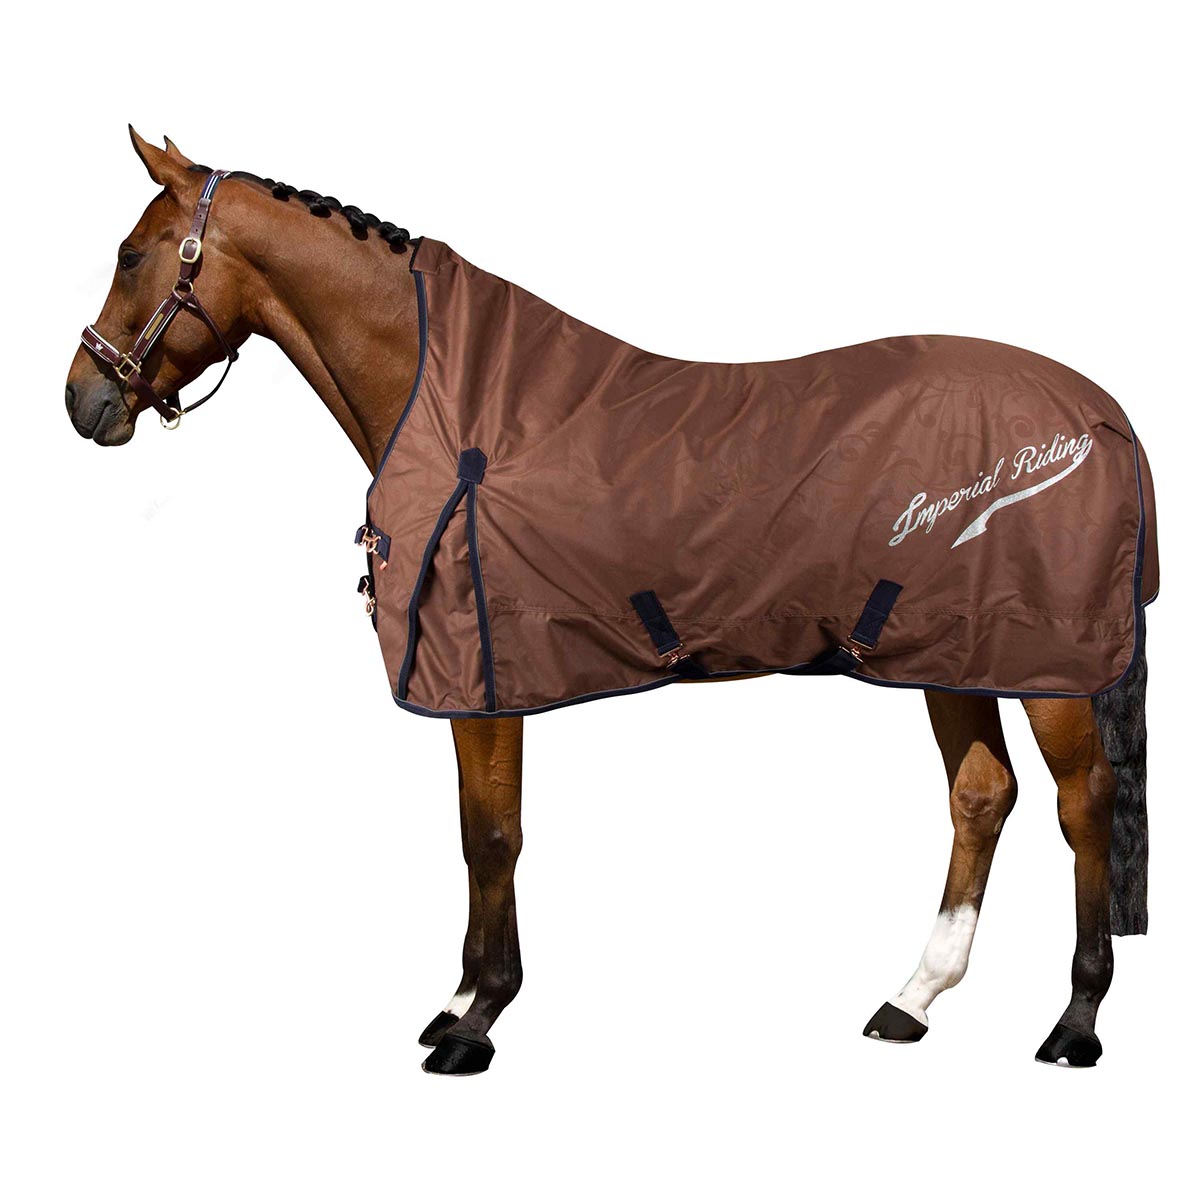 Deken Imperial Riding Irhsuper-dry 300gr, 175 cm in bruin